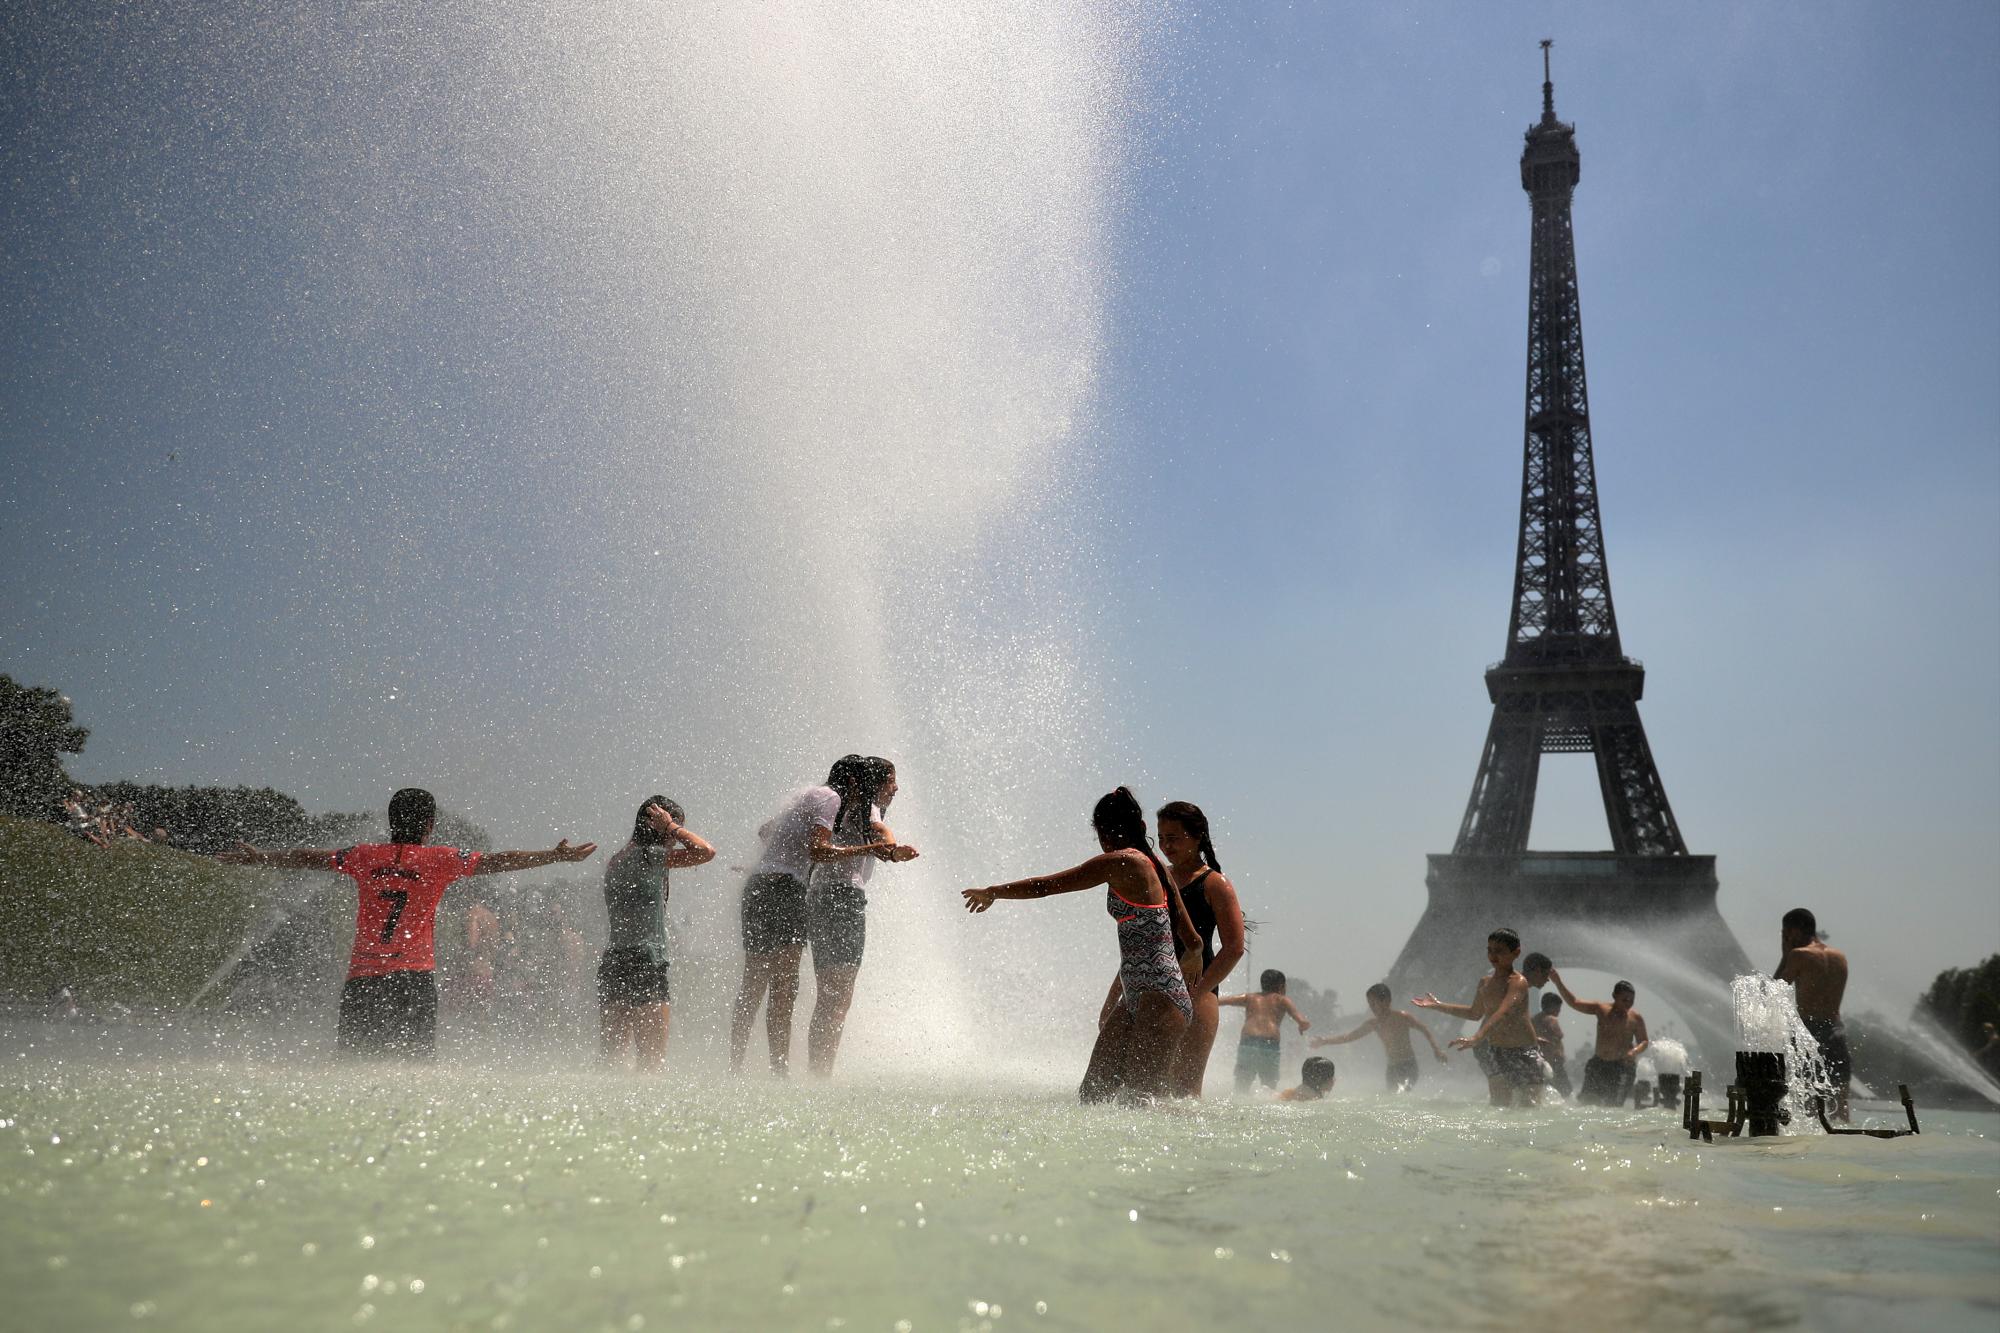 La ola de calor en Europa
En imágenes